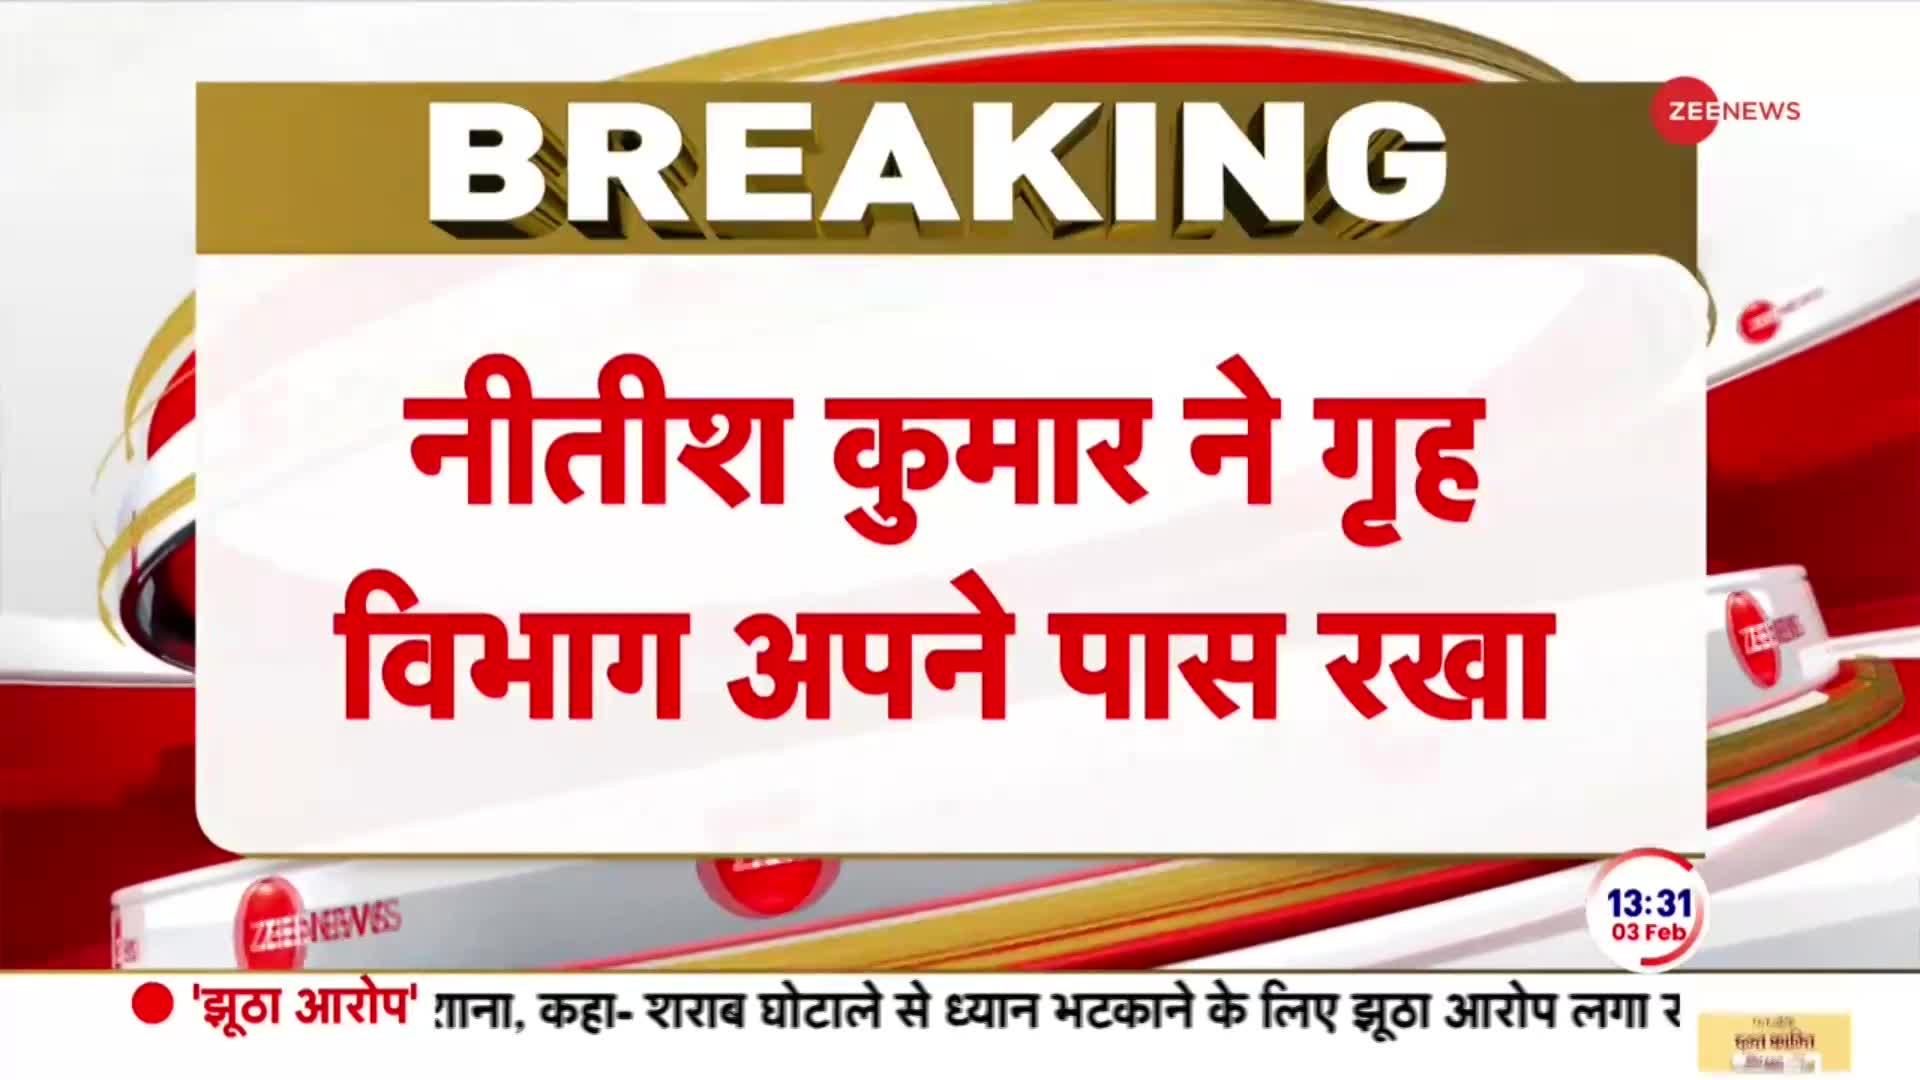 Bihar News: बिहार में मंत्रियों के बीच विभागों का हुआ बंटवारा